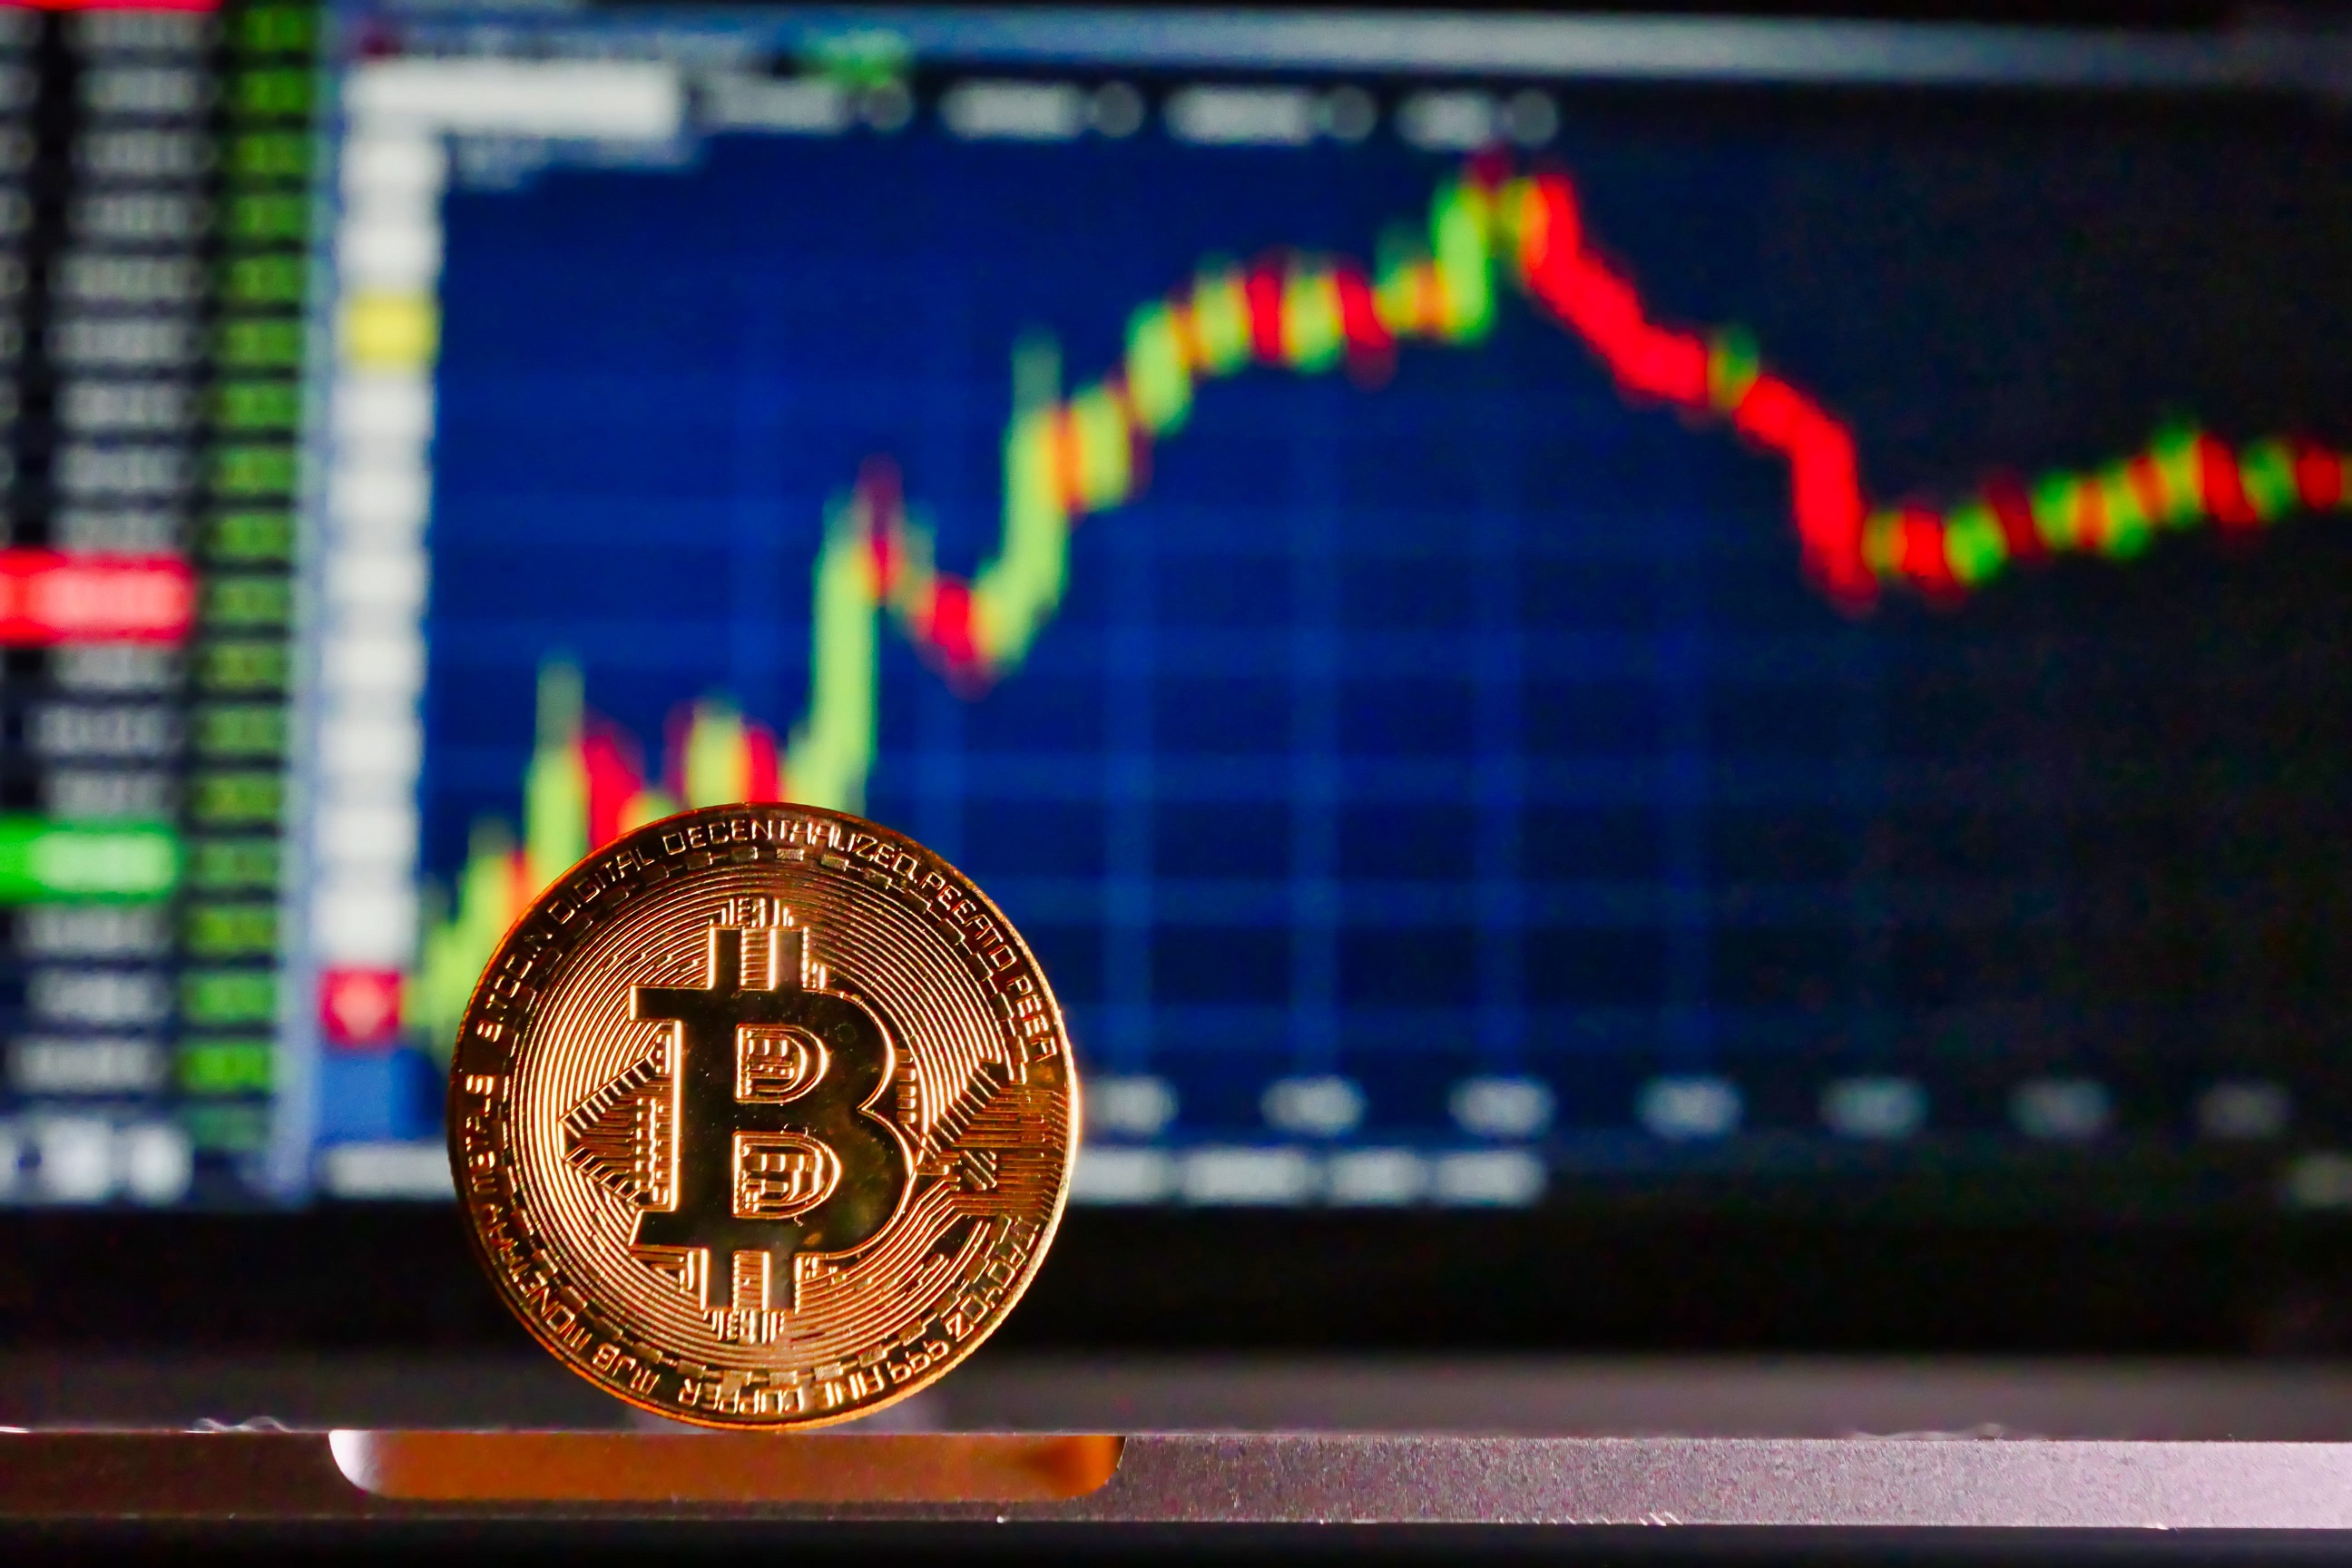 Bitcoin: újabb szárnyalás jöhet? - Felezték a kriptopénz bányászatát - Az én pénzem